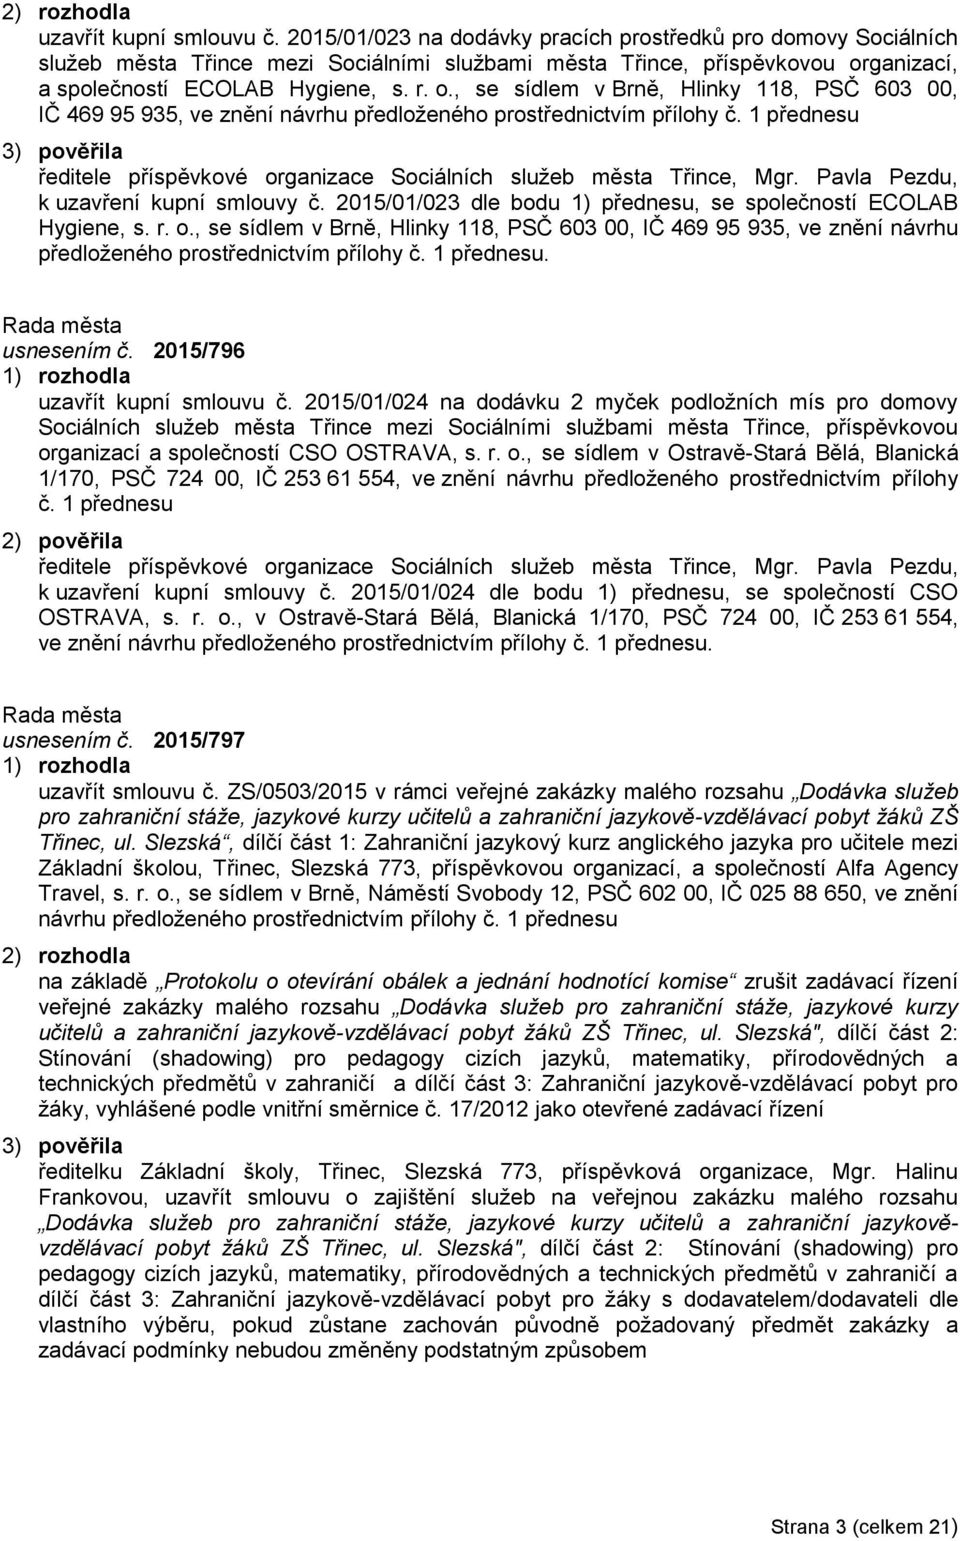 ganizací, a společností ECOLAB Hygiene, s. r. o., se sídlem v Brně, Hlinky 118, PSČ 603 00, IČ 469 95 935, ve znění návrhu předloženého prostřednictvím přílohy č.